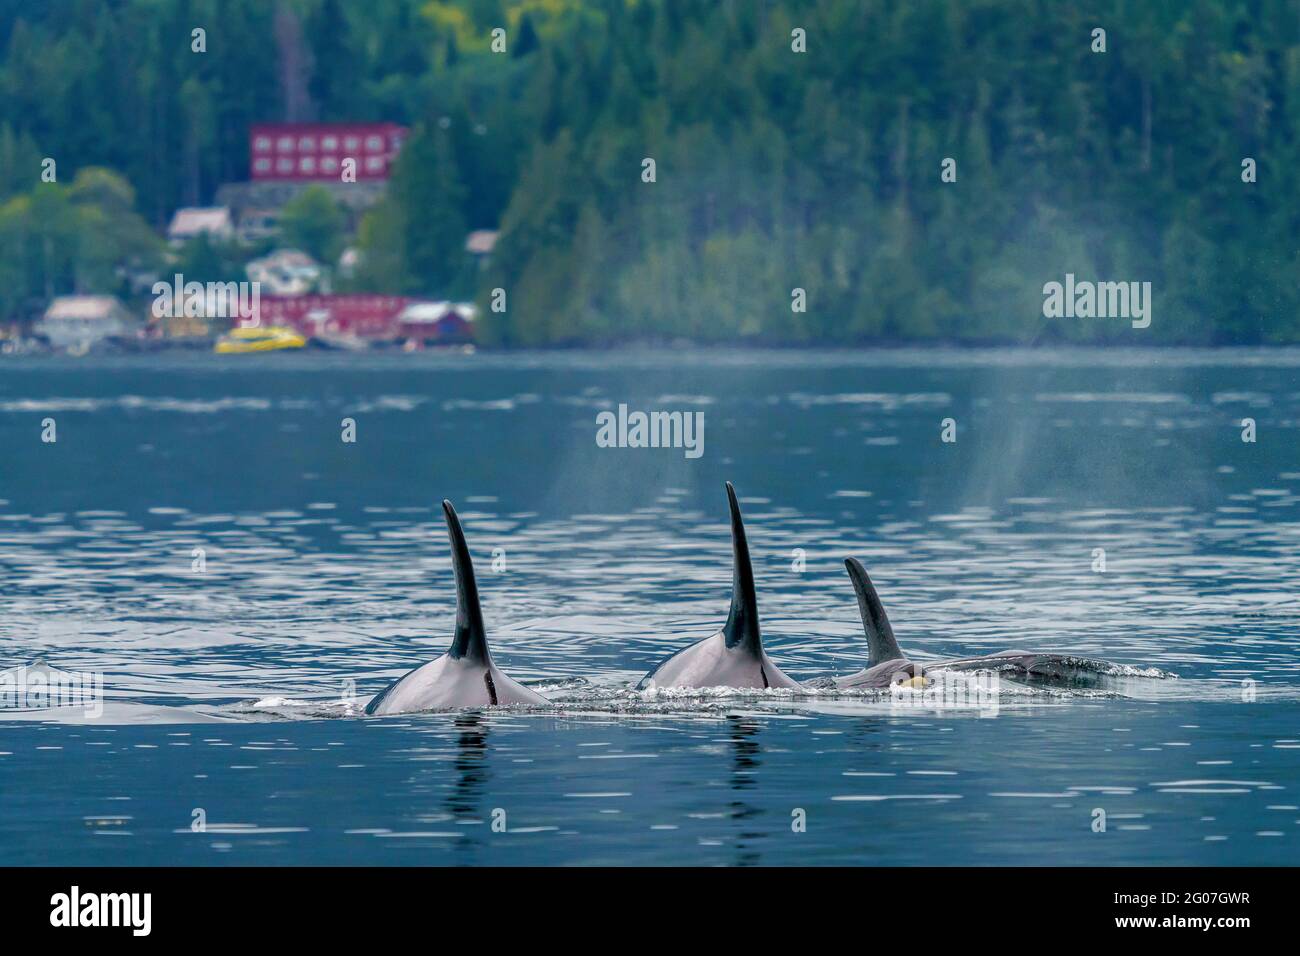 Vaina familiar de orcas residentes del norte nadando por Telegraph Cove, norte de la isla de Vancouver, Territorio de las Primeras Naciones, Columbia Británica, Canadá. Foto de stock